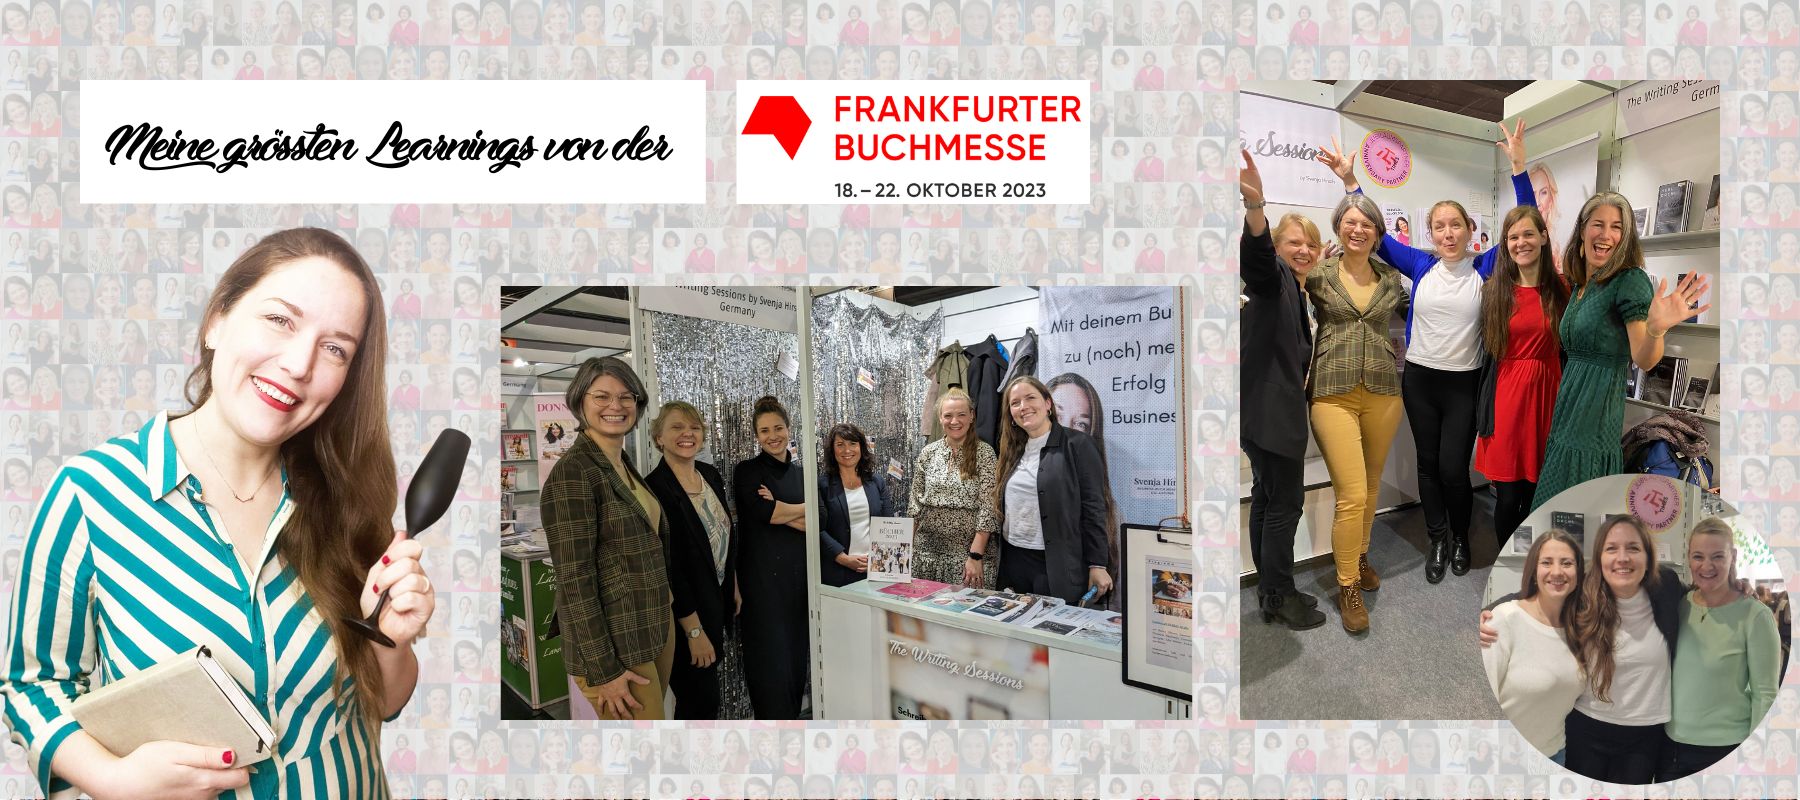 Frankfurter Buchmesse Learnings